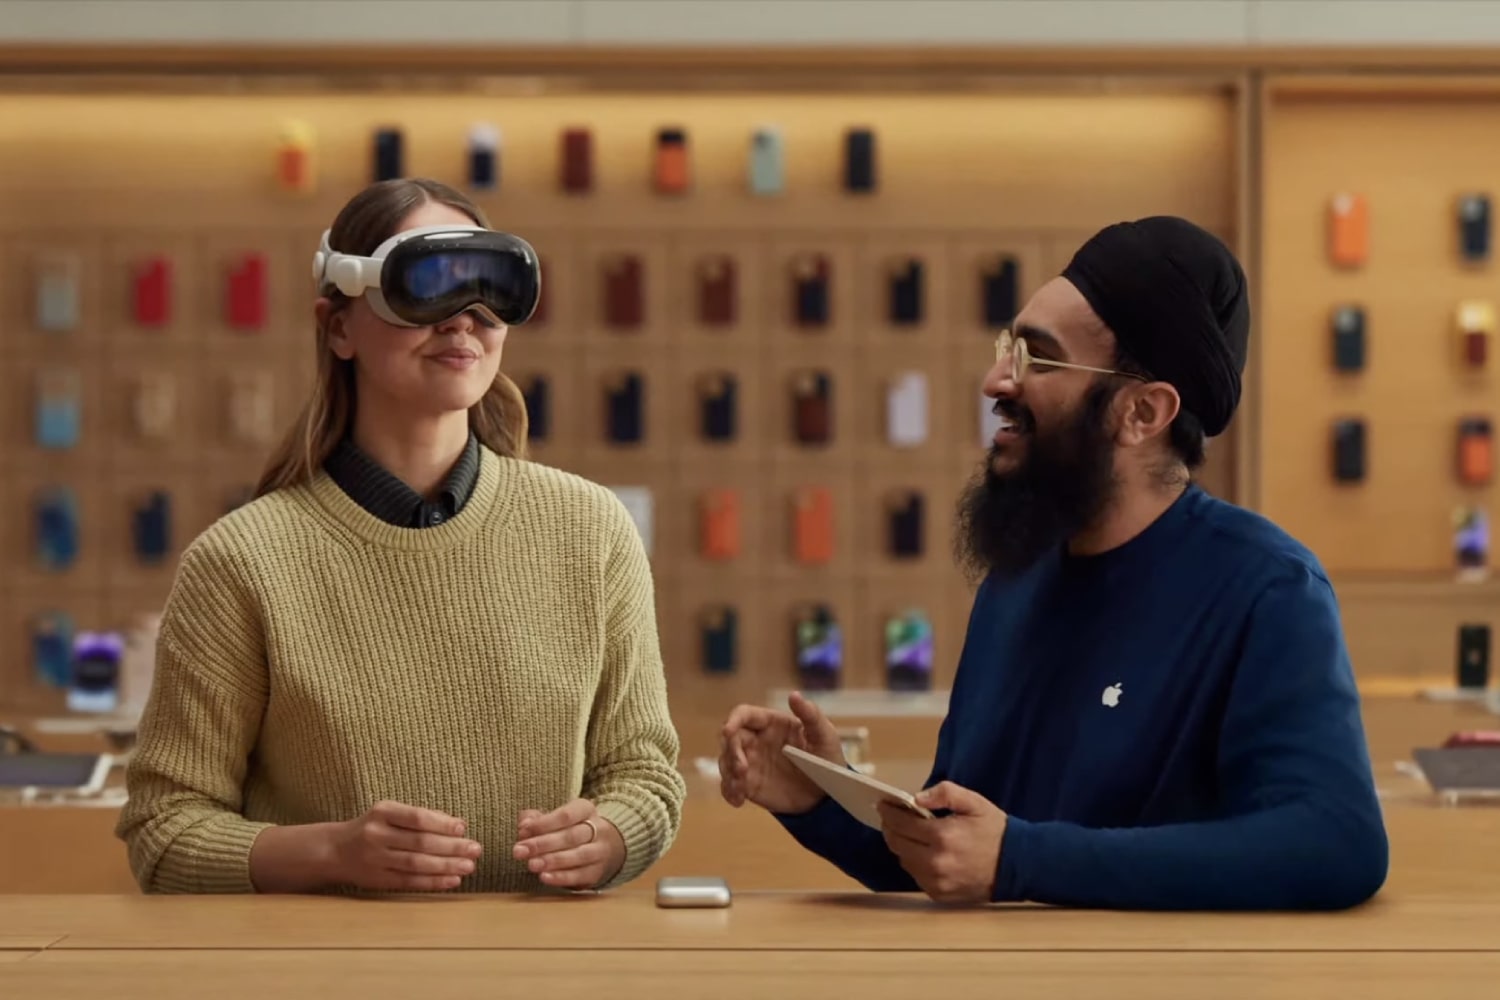 Un empleado de Apple le muestra a una persona cómo usar un auricular Vision Pro en una tienda Apple Store.